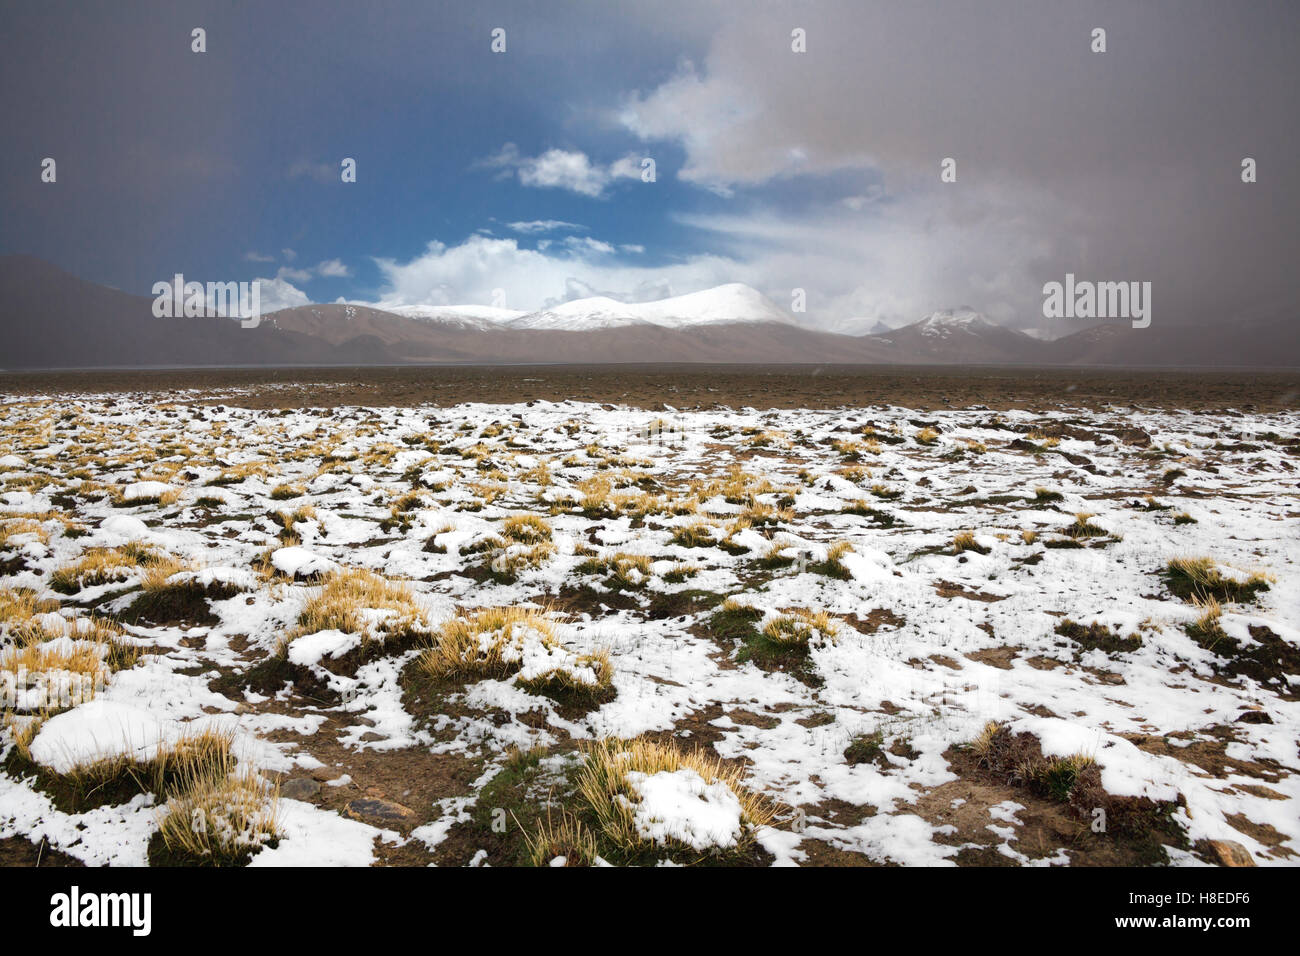 Landschaft bei Karakul See - Pamir - T Ajikistan - GBAO Provinz - Dach der Welt Stockfoto